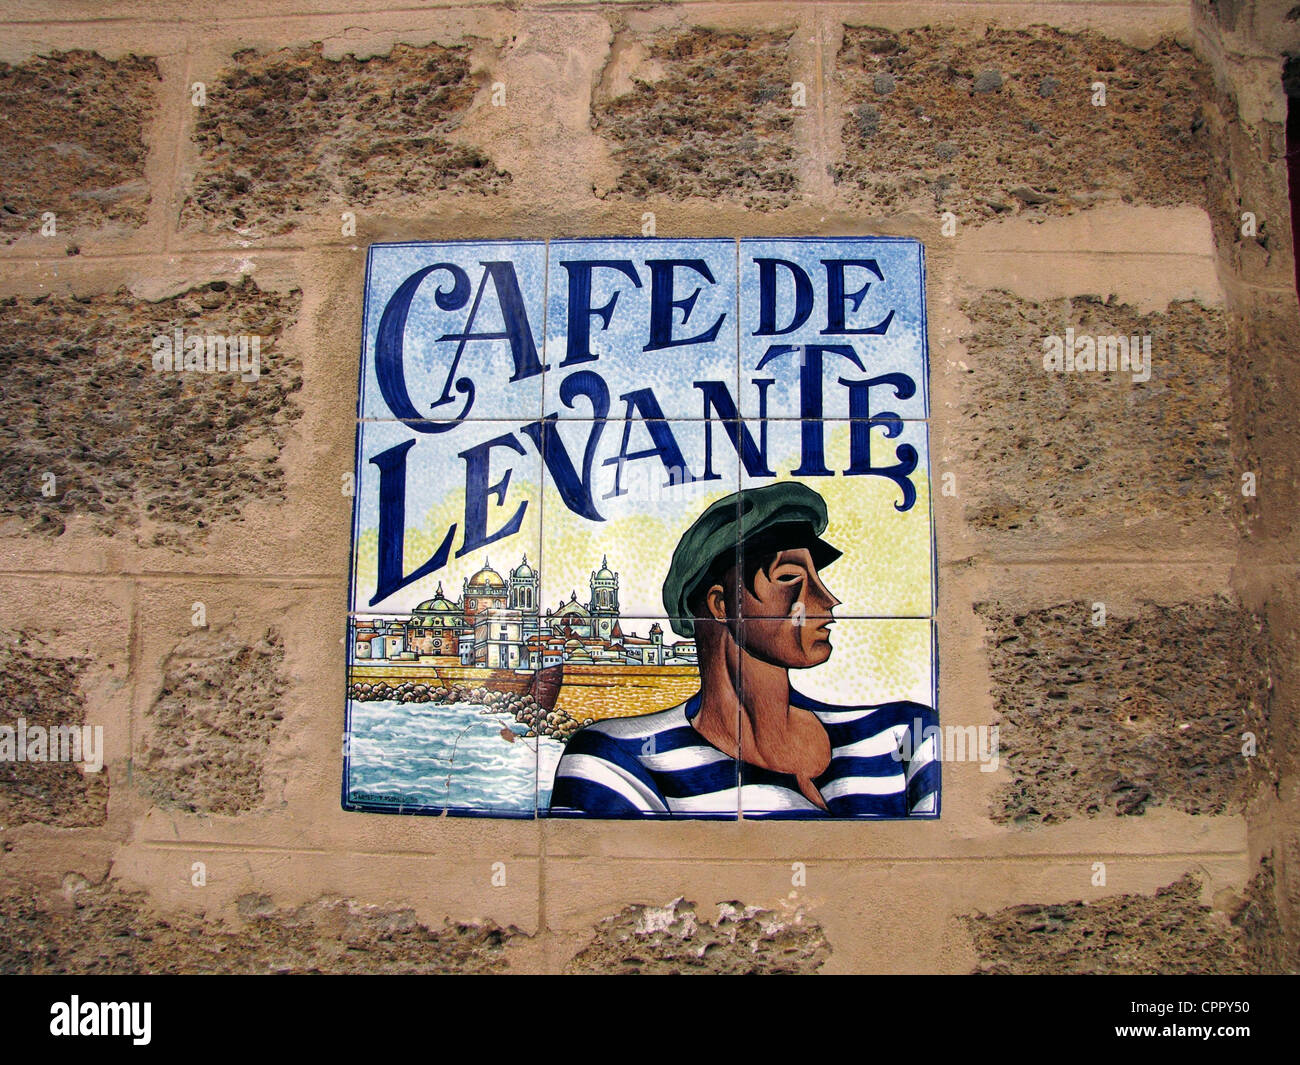 Spain Andalusia Cadiz Cafeteria ceramic sign Stock Photo